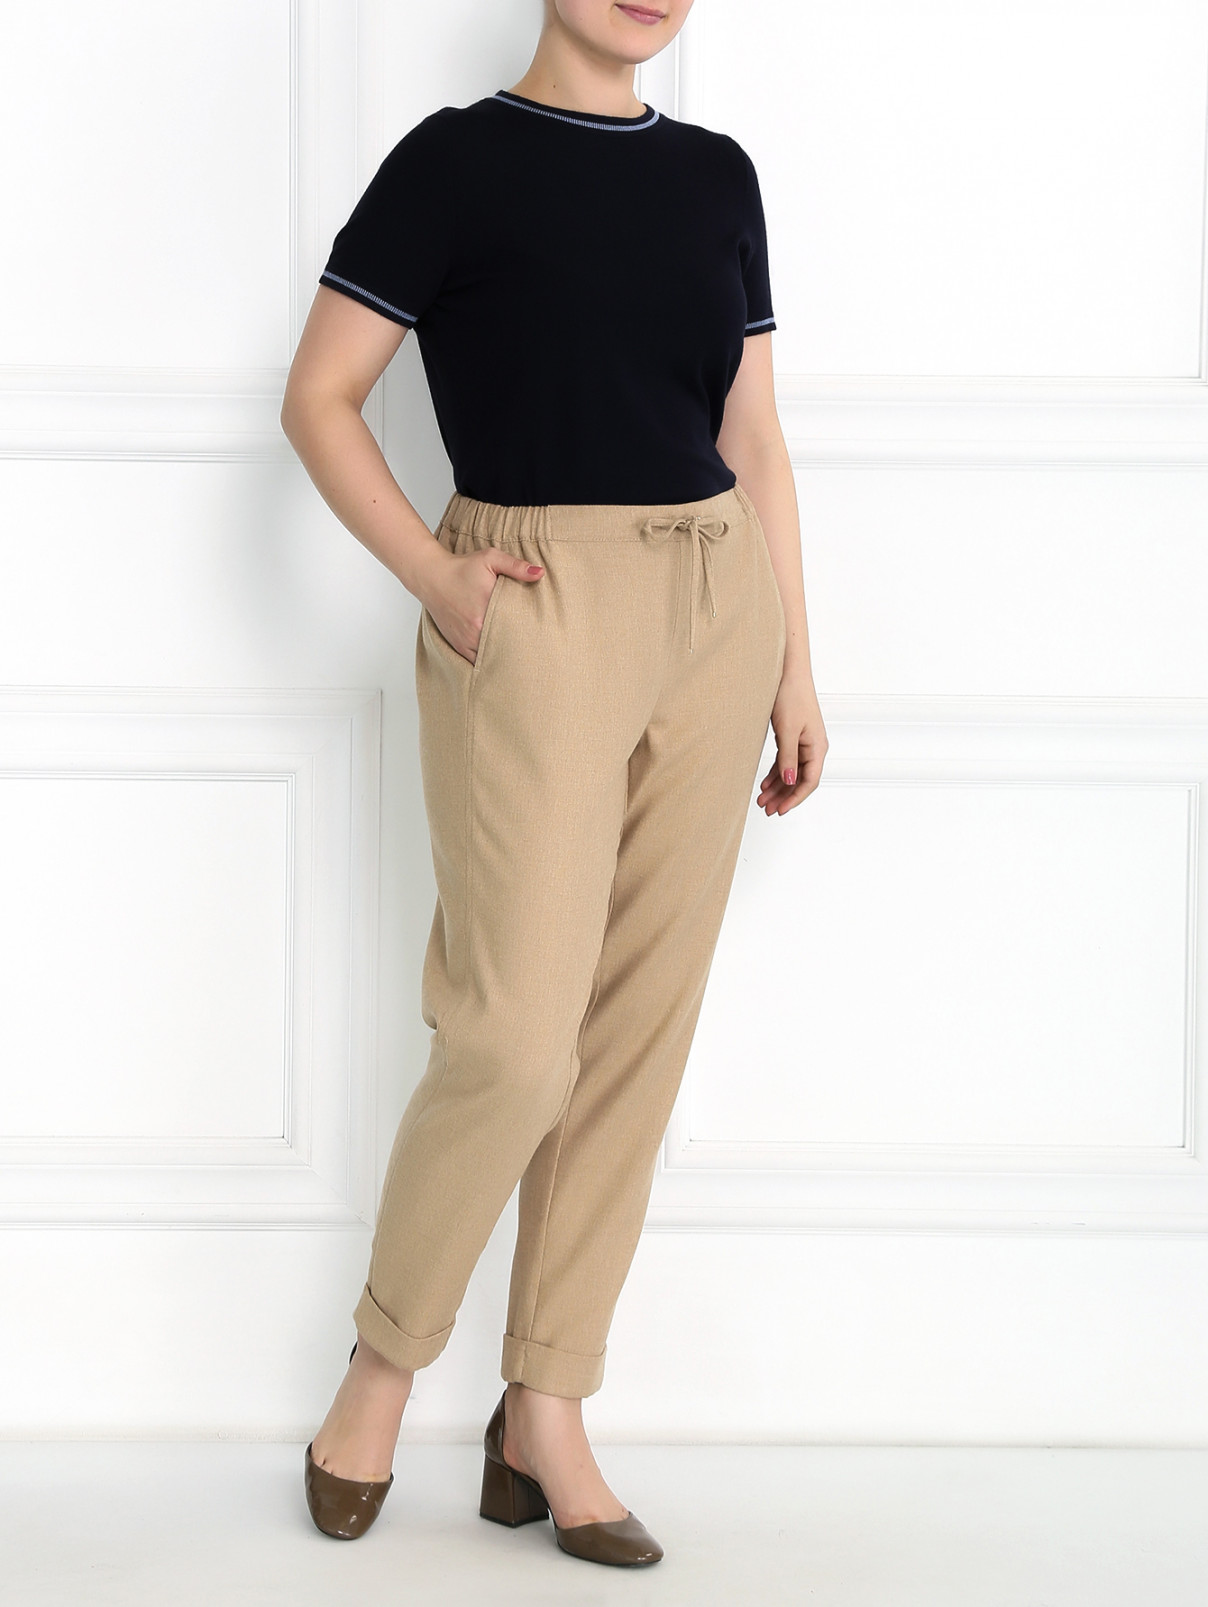 Укороченные брюки из смешанной шерсти на резинке Marina Sport  –  Модель Общий вид  – Цвет:  Бежевый